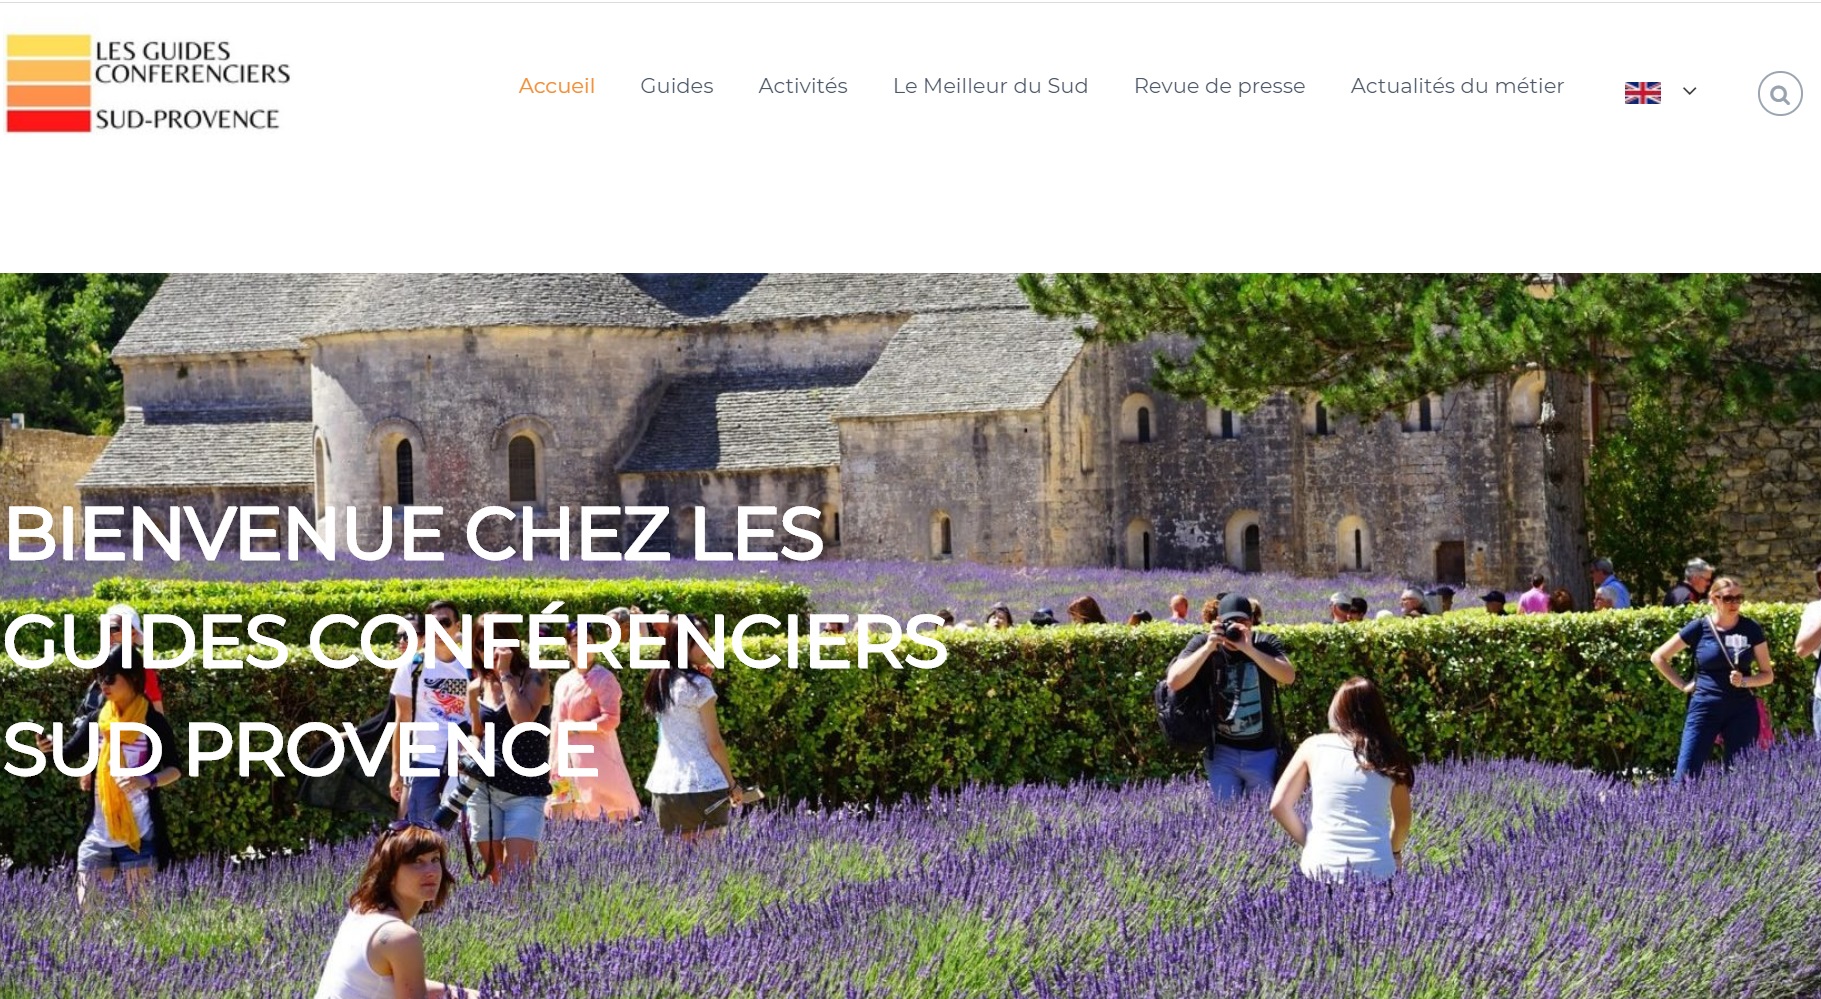 La plateforme de réservations lancée par les Guides Conférenciers Sud-Provence - DR